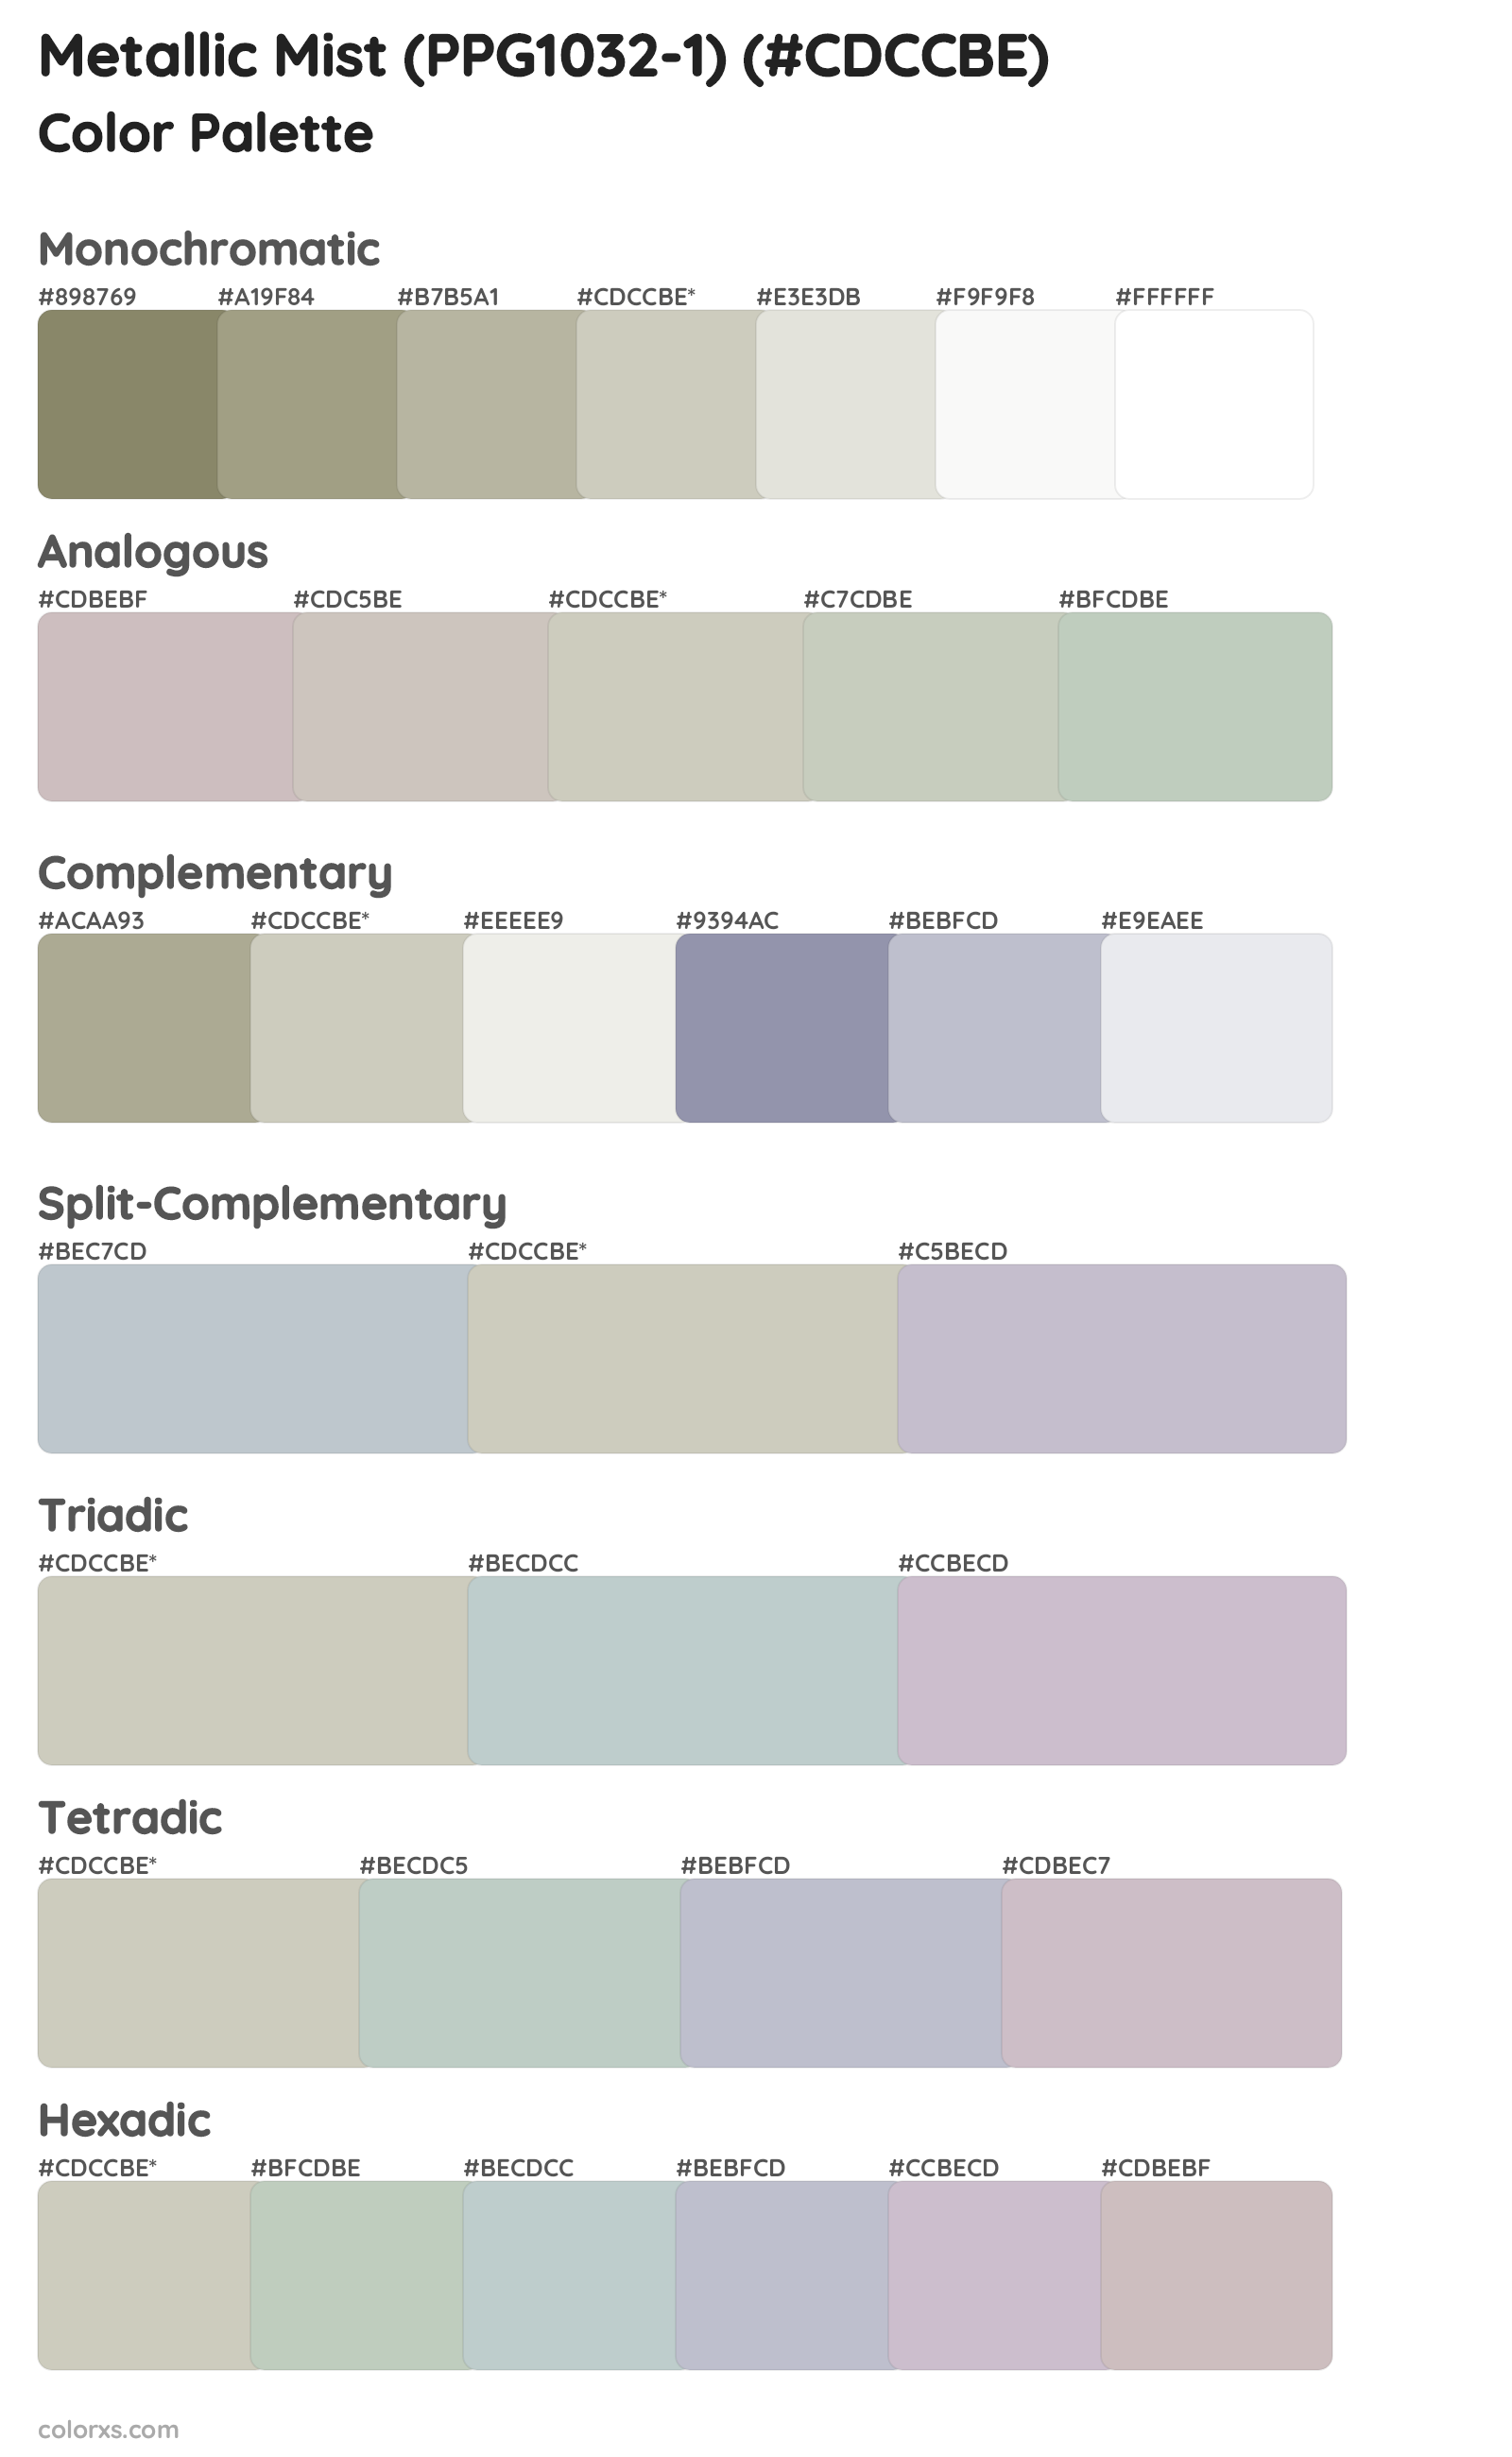 Metallic Mist (PPG1032-1) Color Scheme Palettes